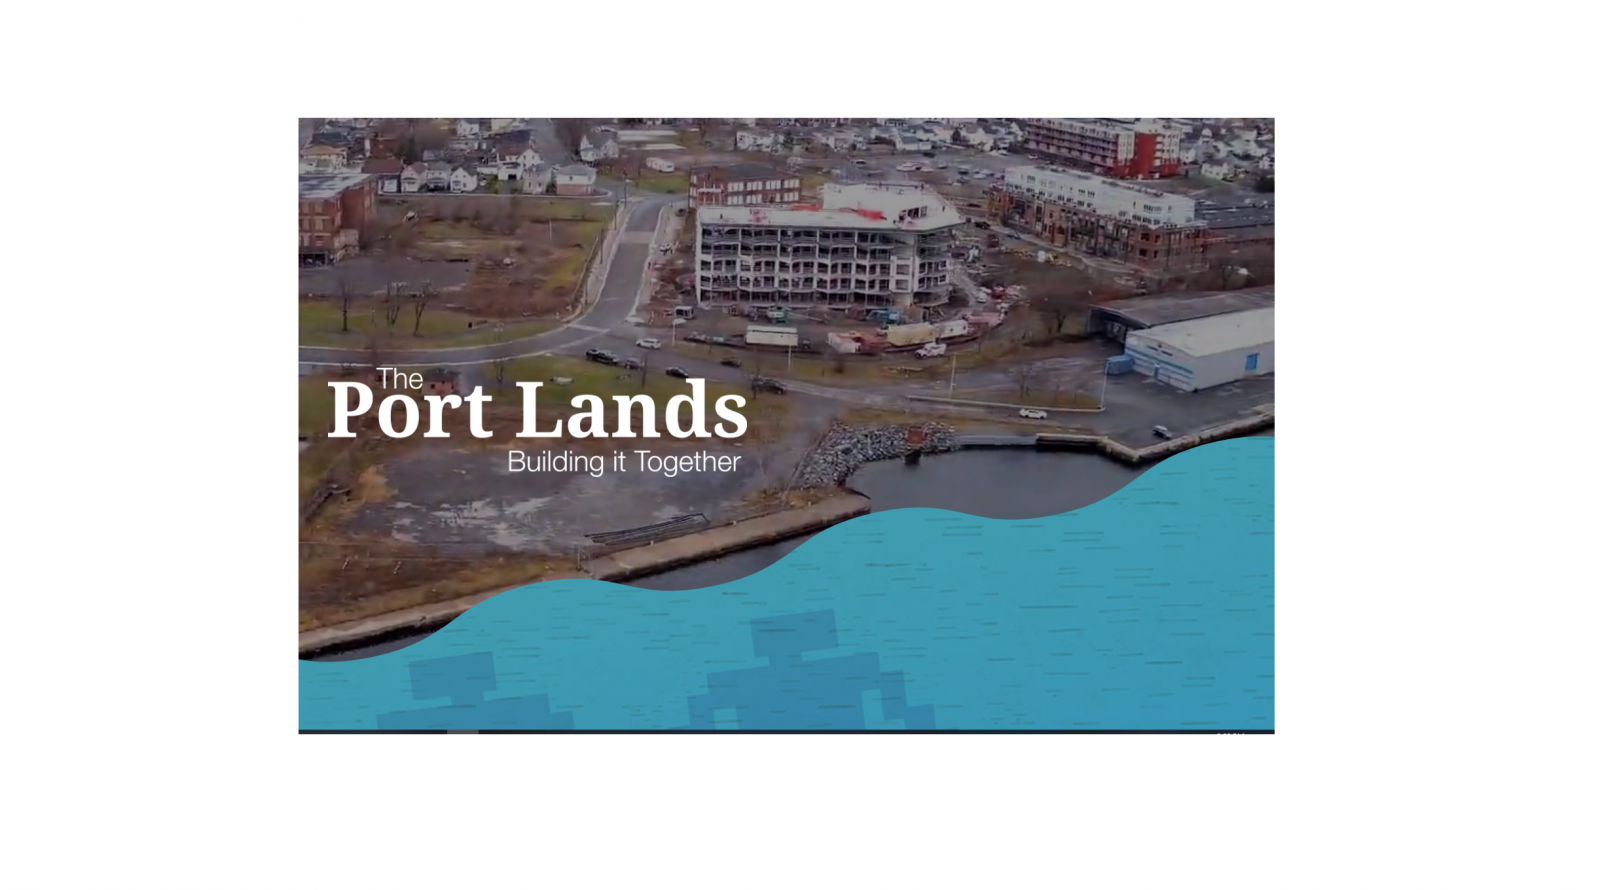 Port Lands project launches community art contest